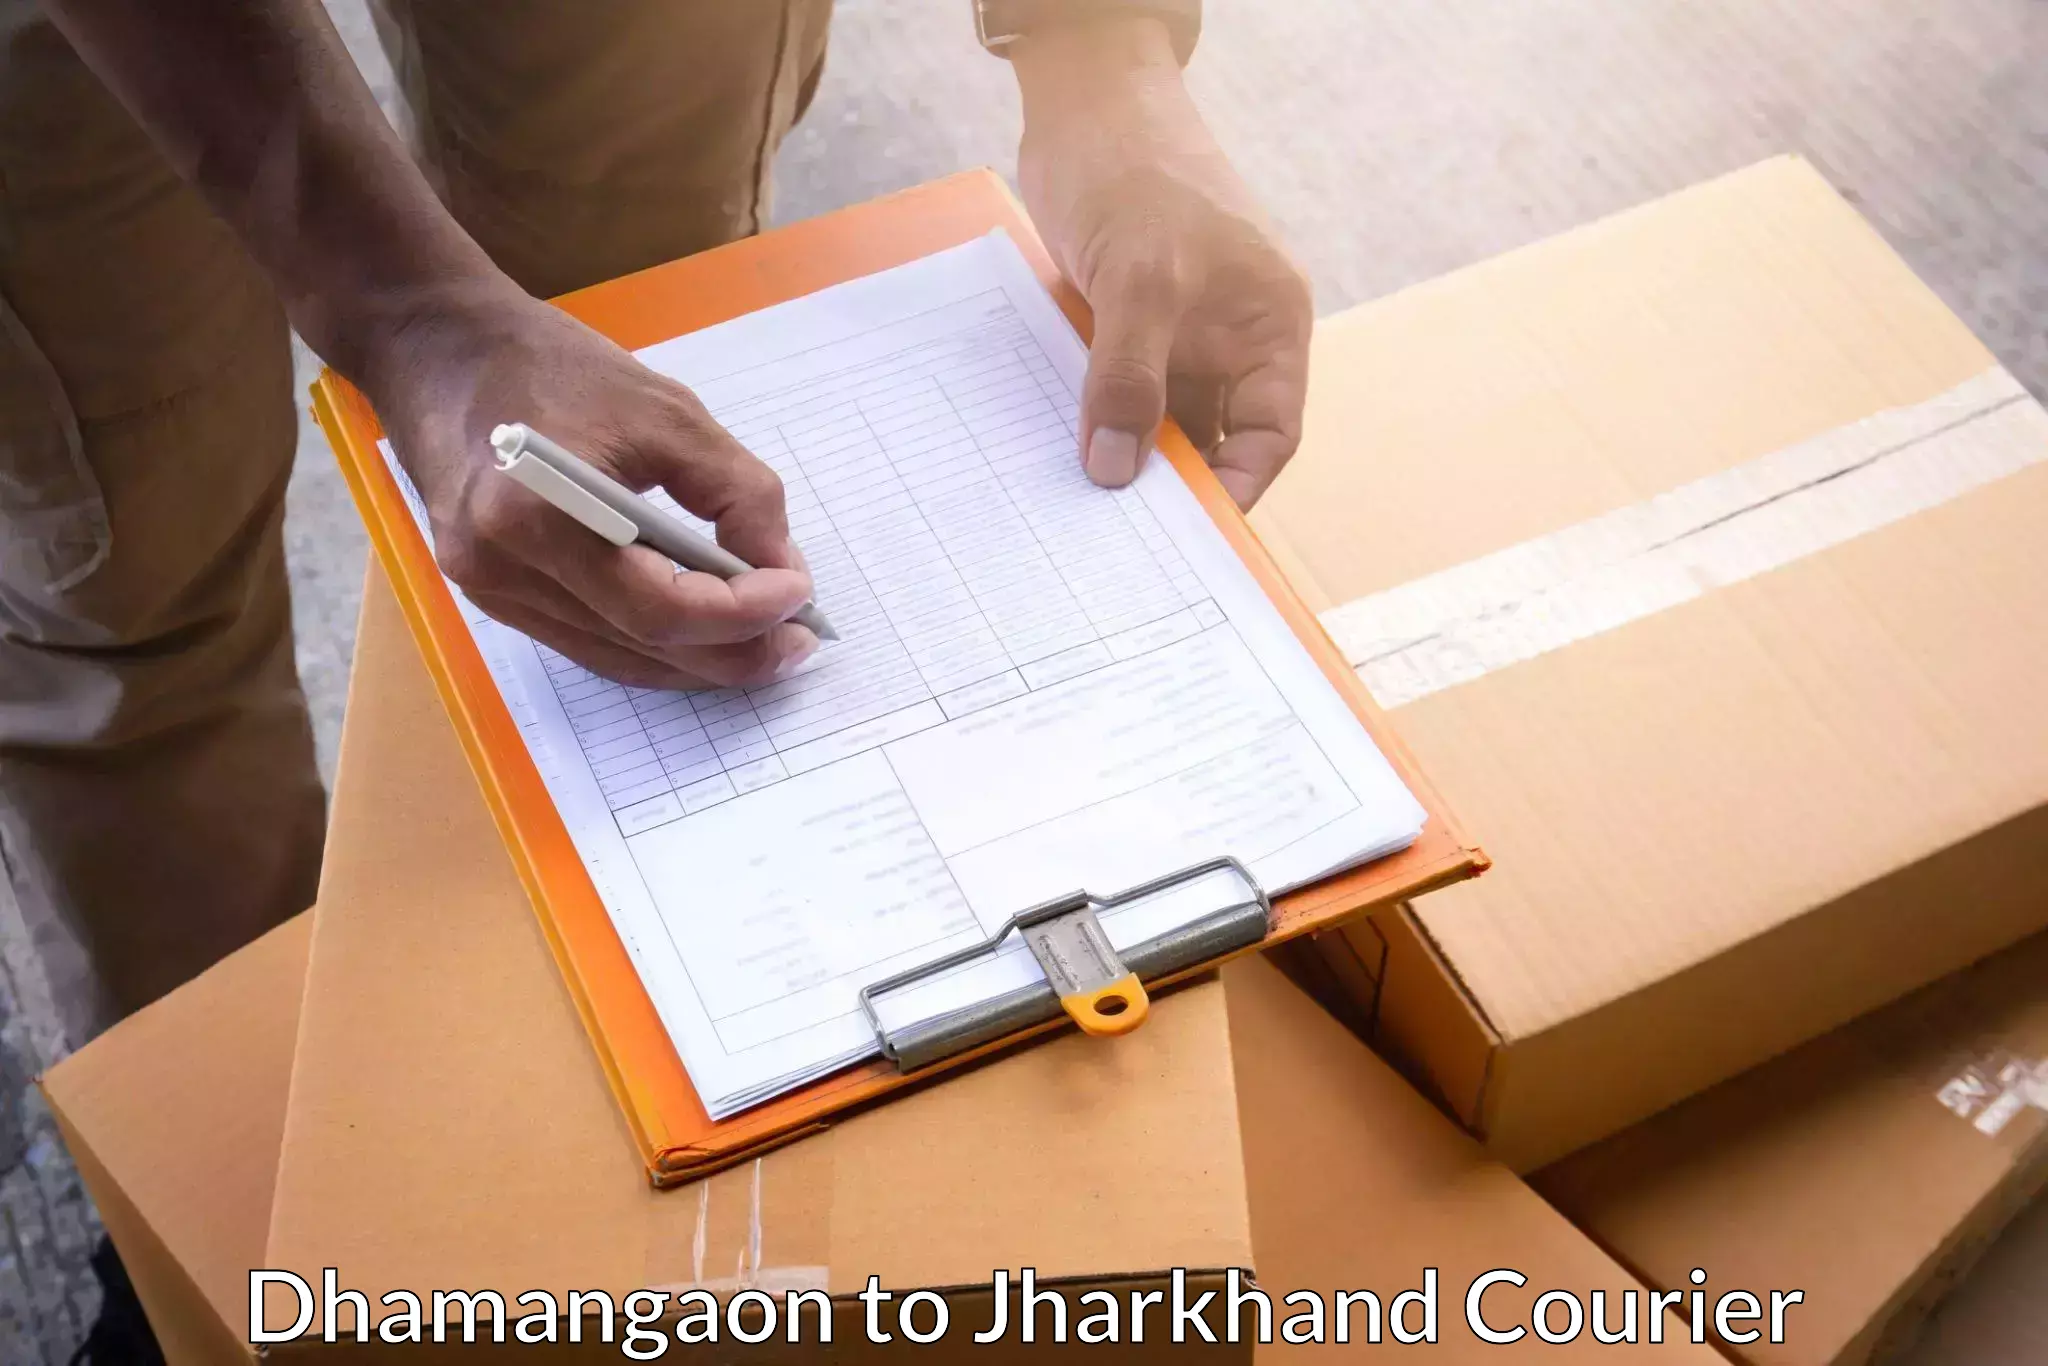 Tracking updates Dhamangaon to Godabar Chatra